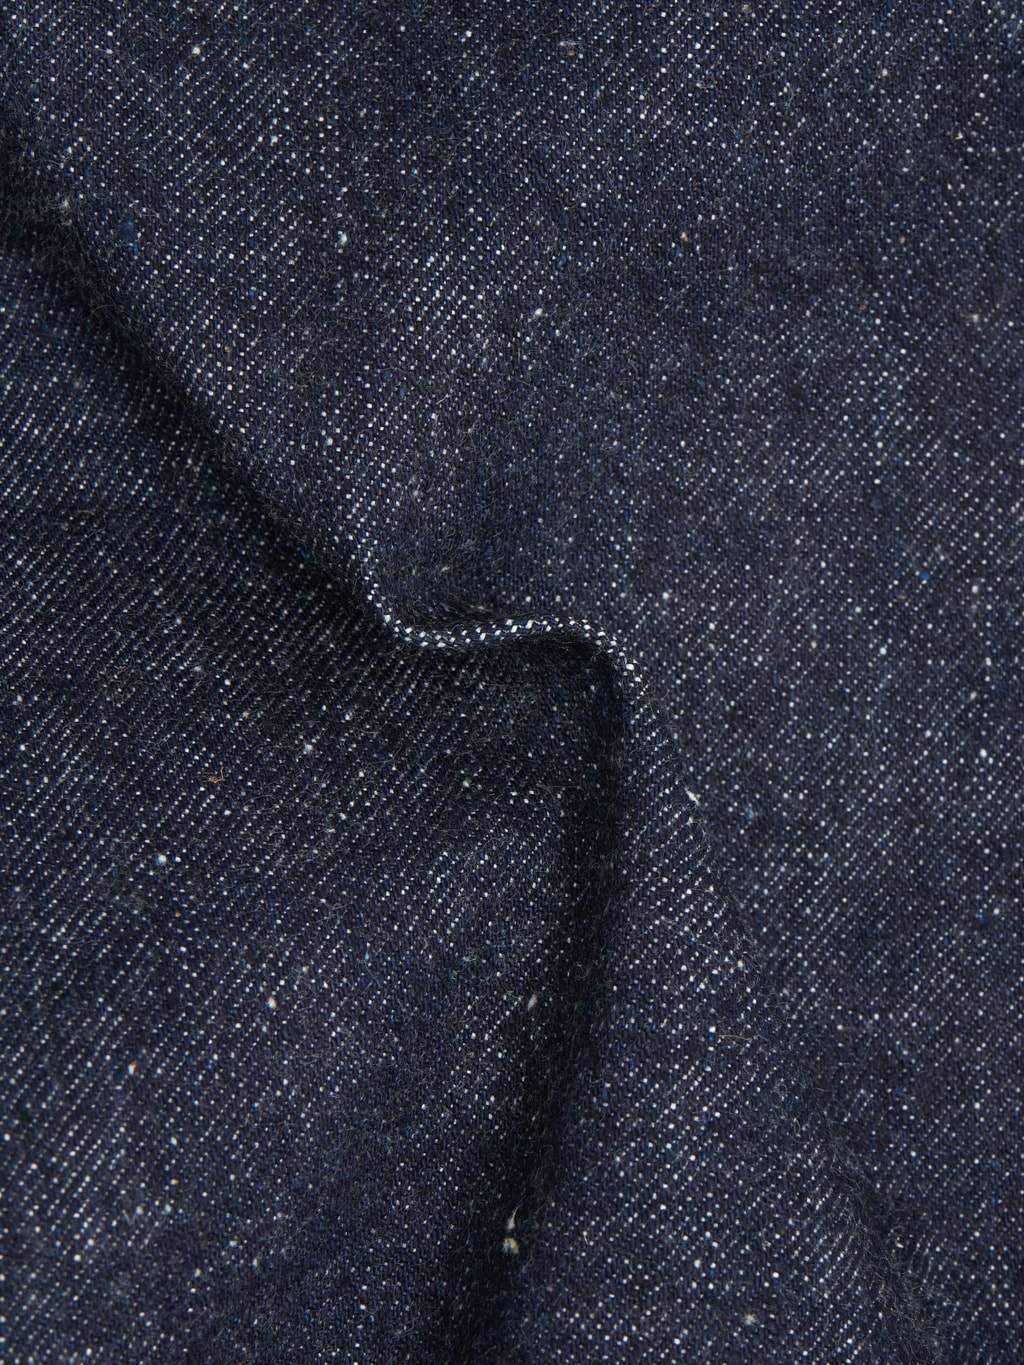 samurai jeans s0520xx otokogi 15oz relaxed tapered jeans texture